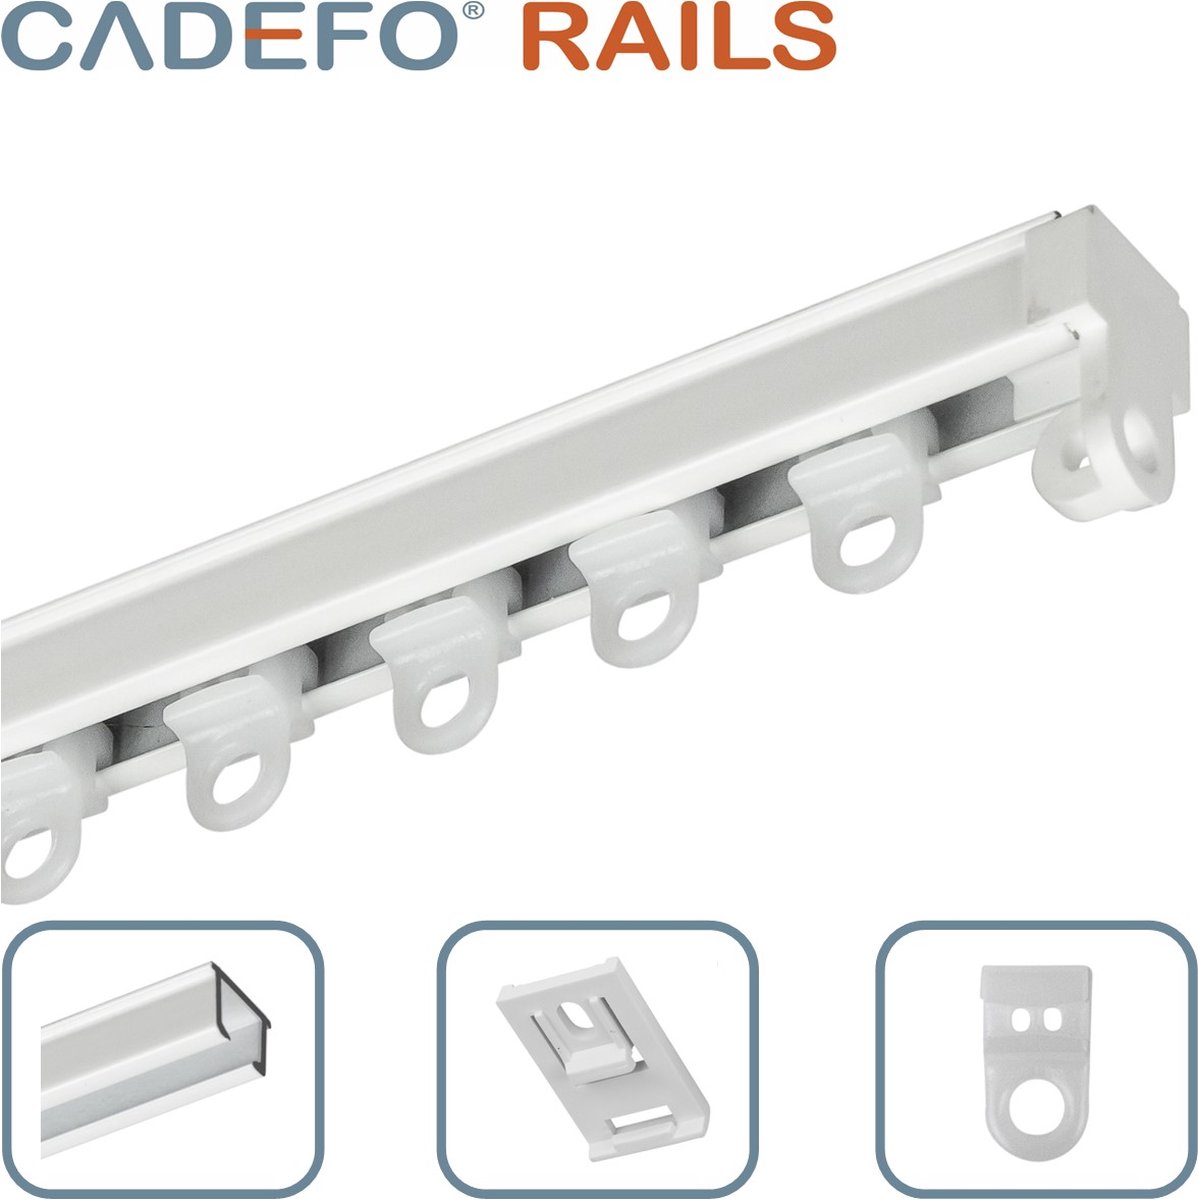 CADEFO RAILS (251 - 300 cm) Gordijnrails - Compleet op maat! - UIT 1 STUK - Leverbaar tot 6 meter - Plafondbevestiging - Lengte 294 cm